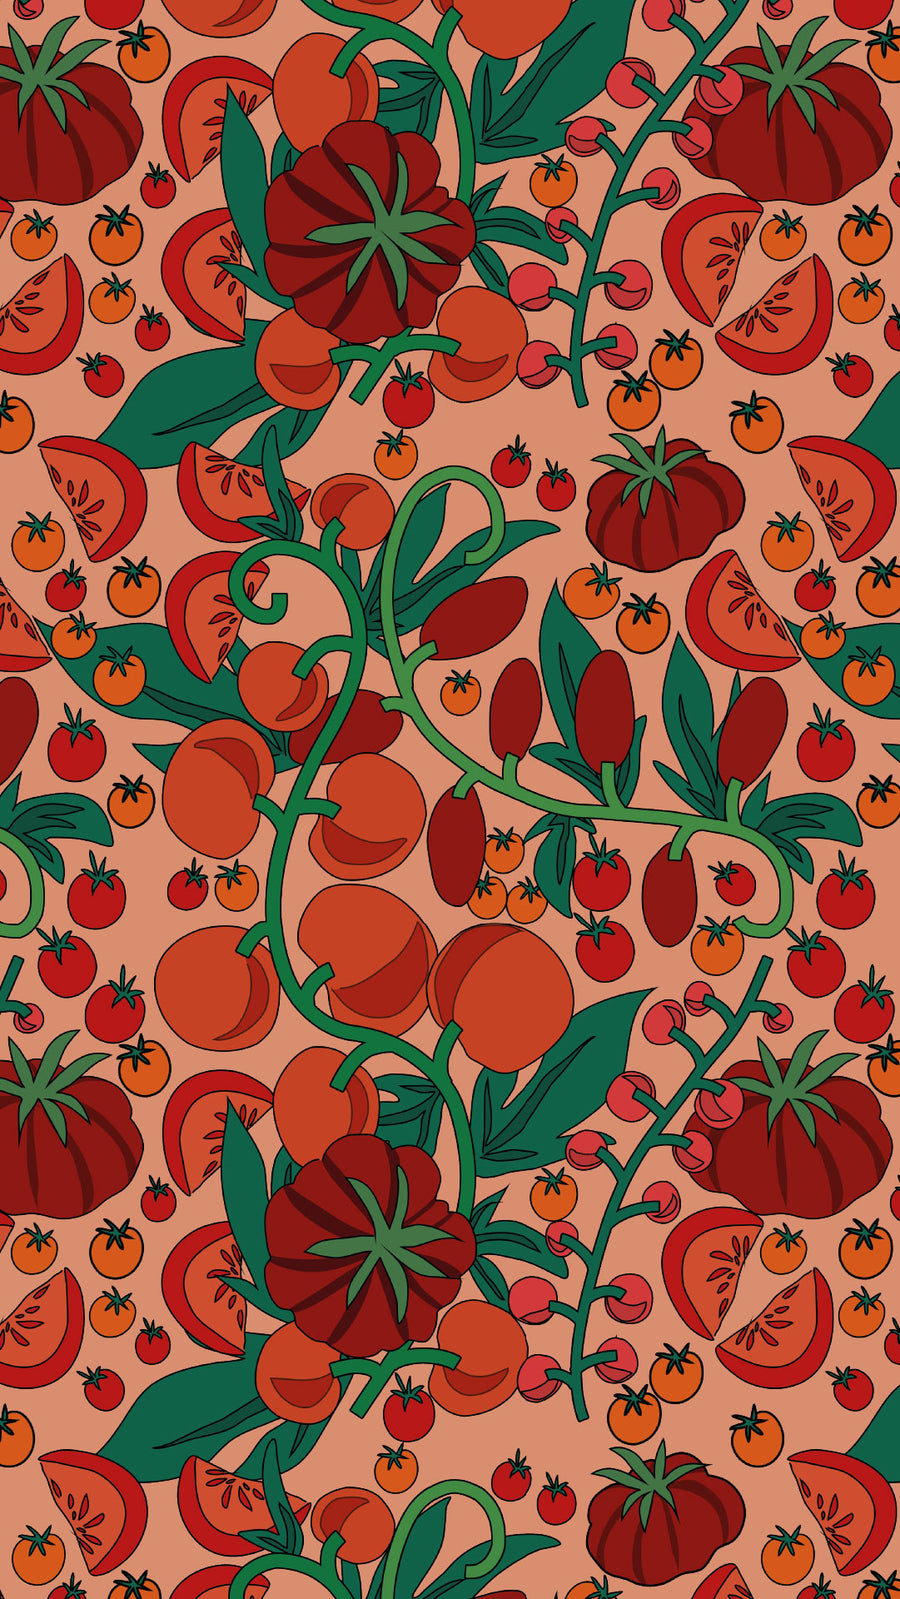 Tomatoes | Digital Phone Wallpaper